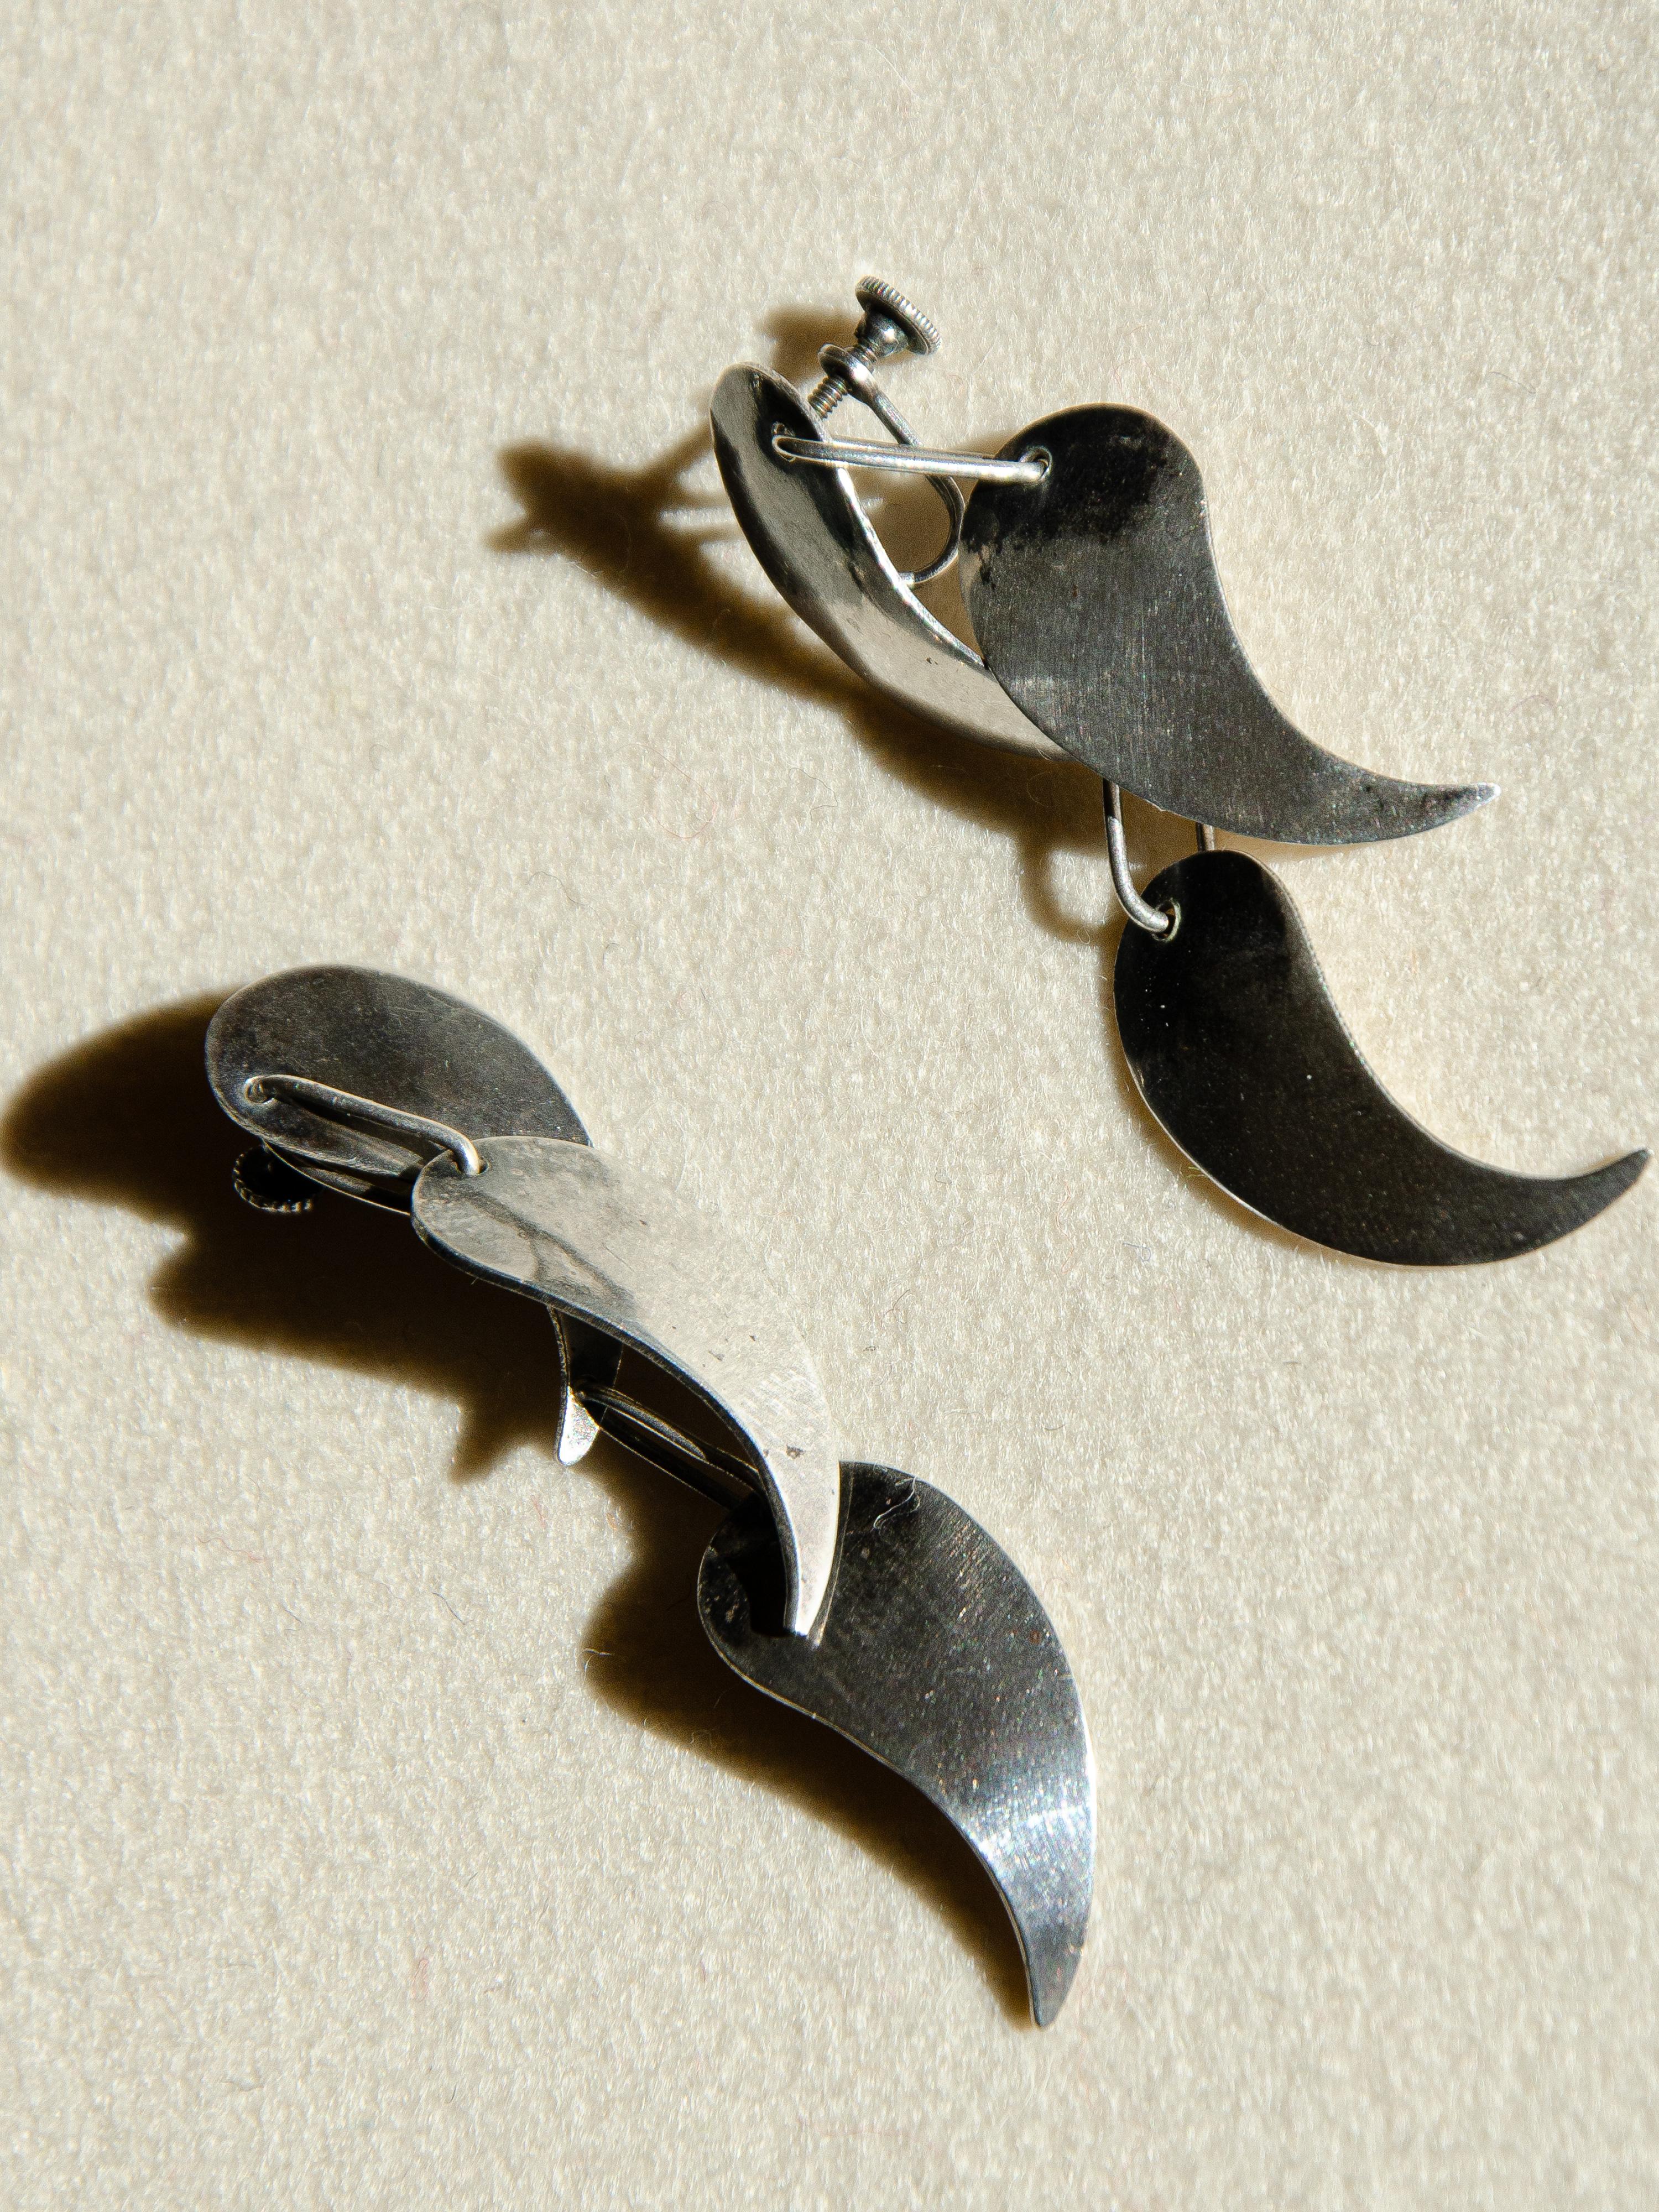 Exceptionnelles et rares boucles d'oreilles en argent sterling en forme de pétales, conçues par le bijoutier moderniste de Greenwich Village, Art Smith, dans les années 1950. Jewell est considéré comme l'un des maîtres joailliers du mouvement